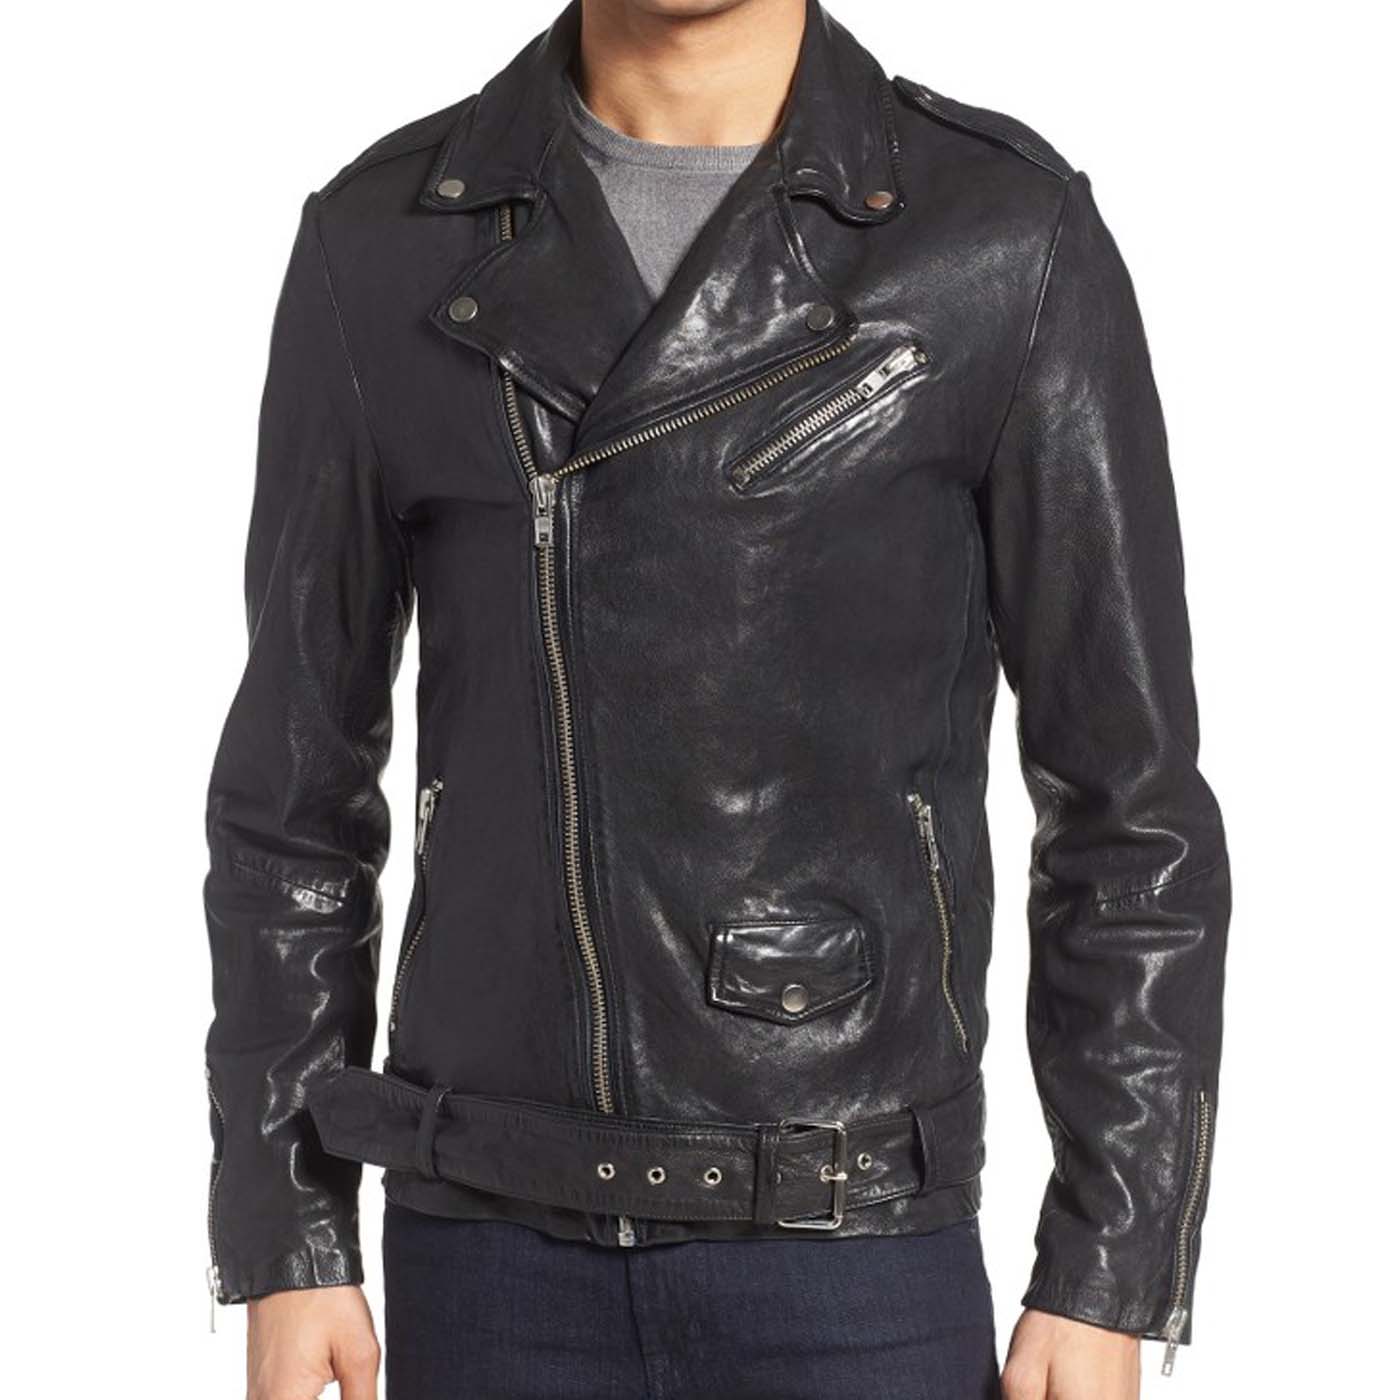 Leather Biker Jacket For Mens 4.